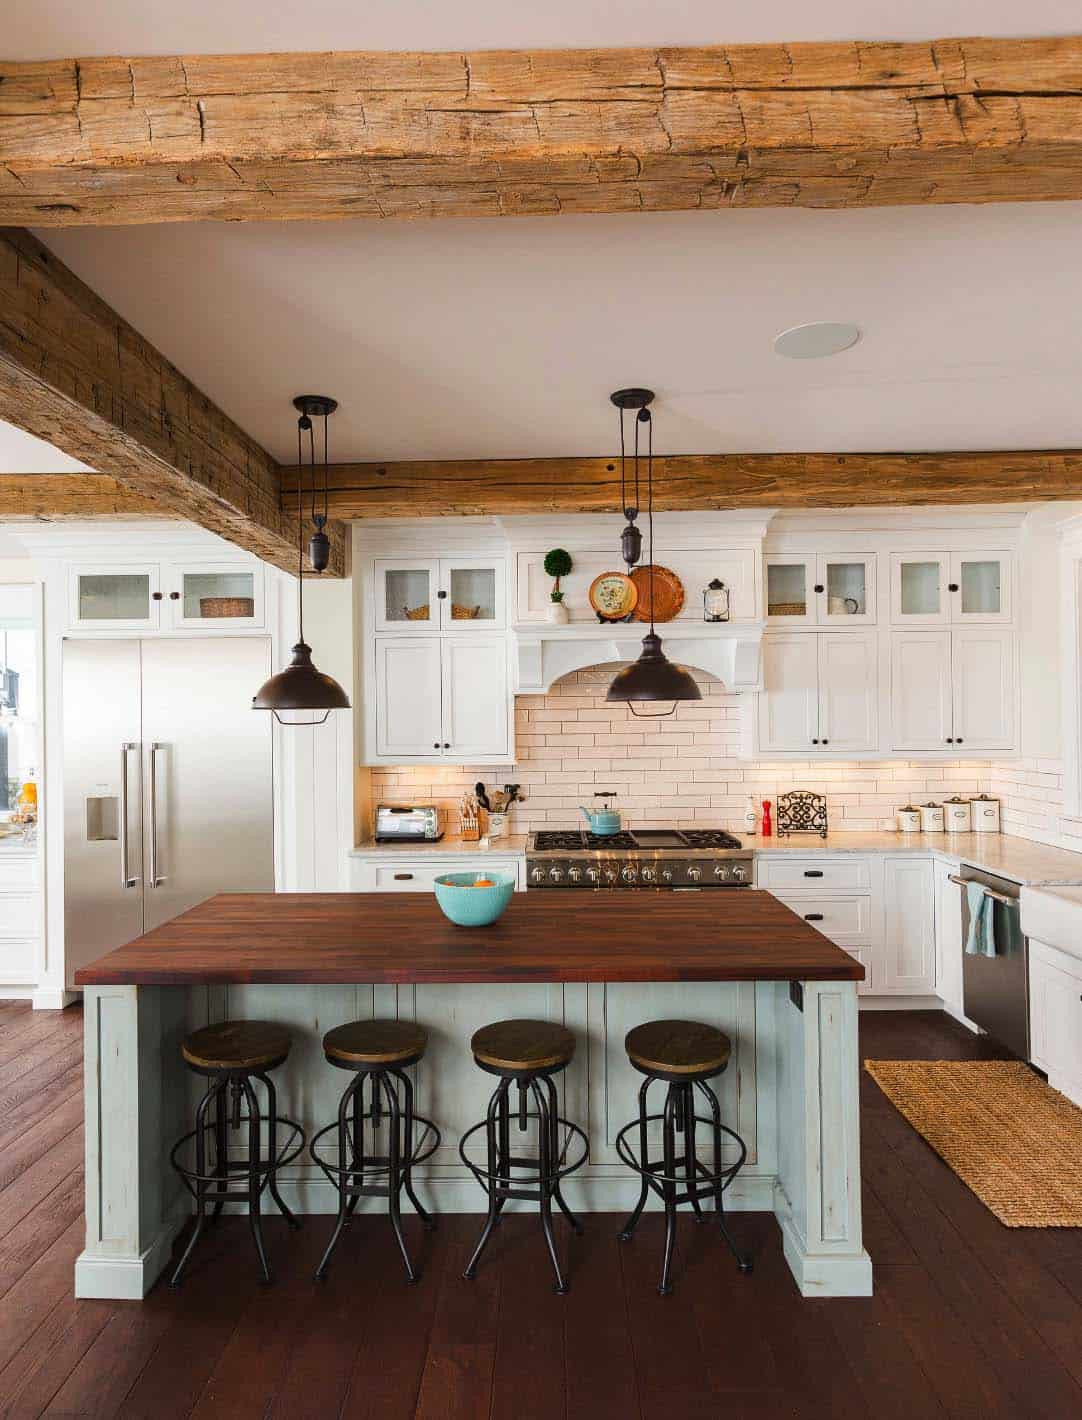 Farmhouse Kitchen Design Ideas
 35 Amazingly creative and stylish farmhouse kitchen ideas